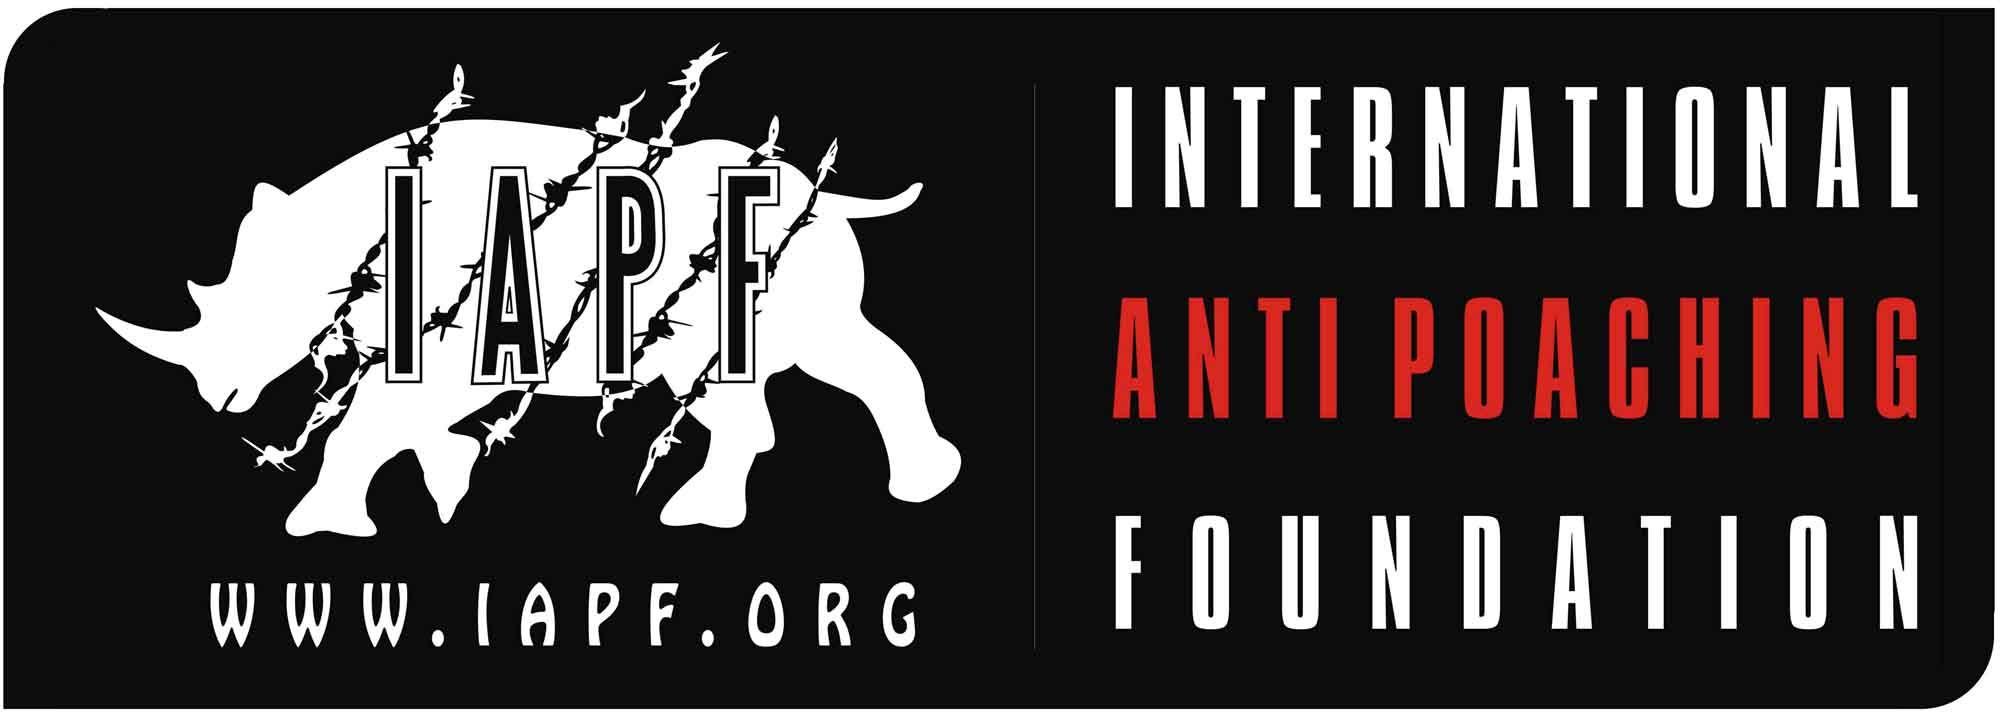 Iapf Logo - International Anti Poaching Foundation - USA | International Anti ...